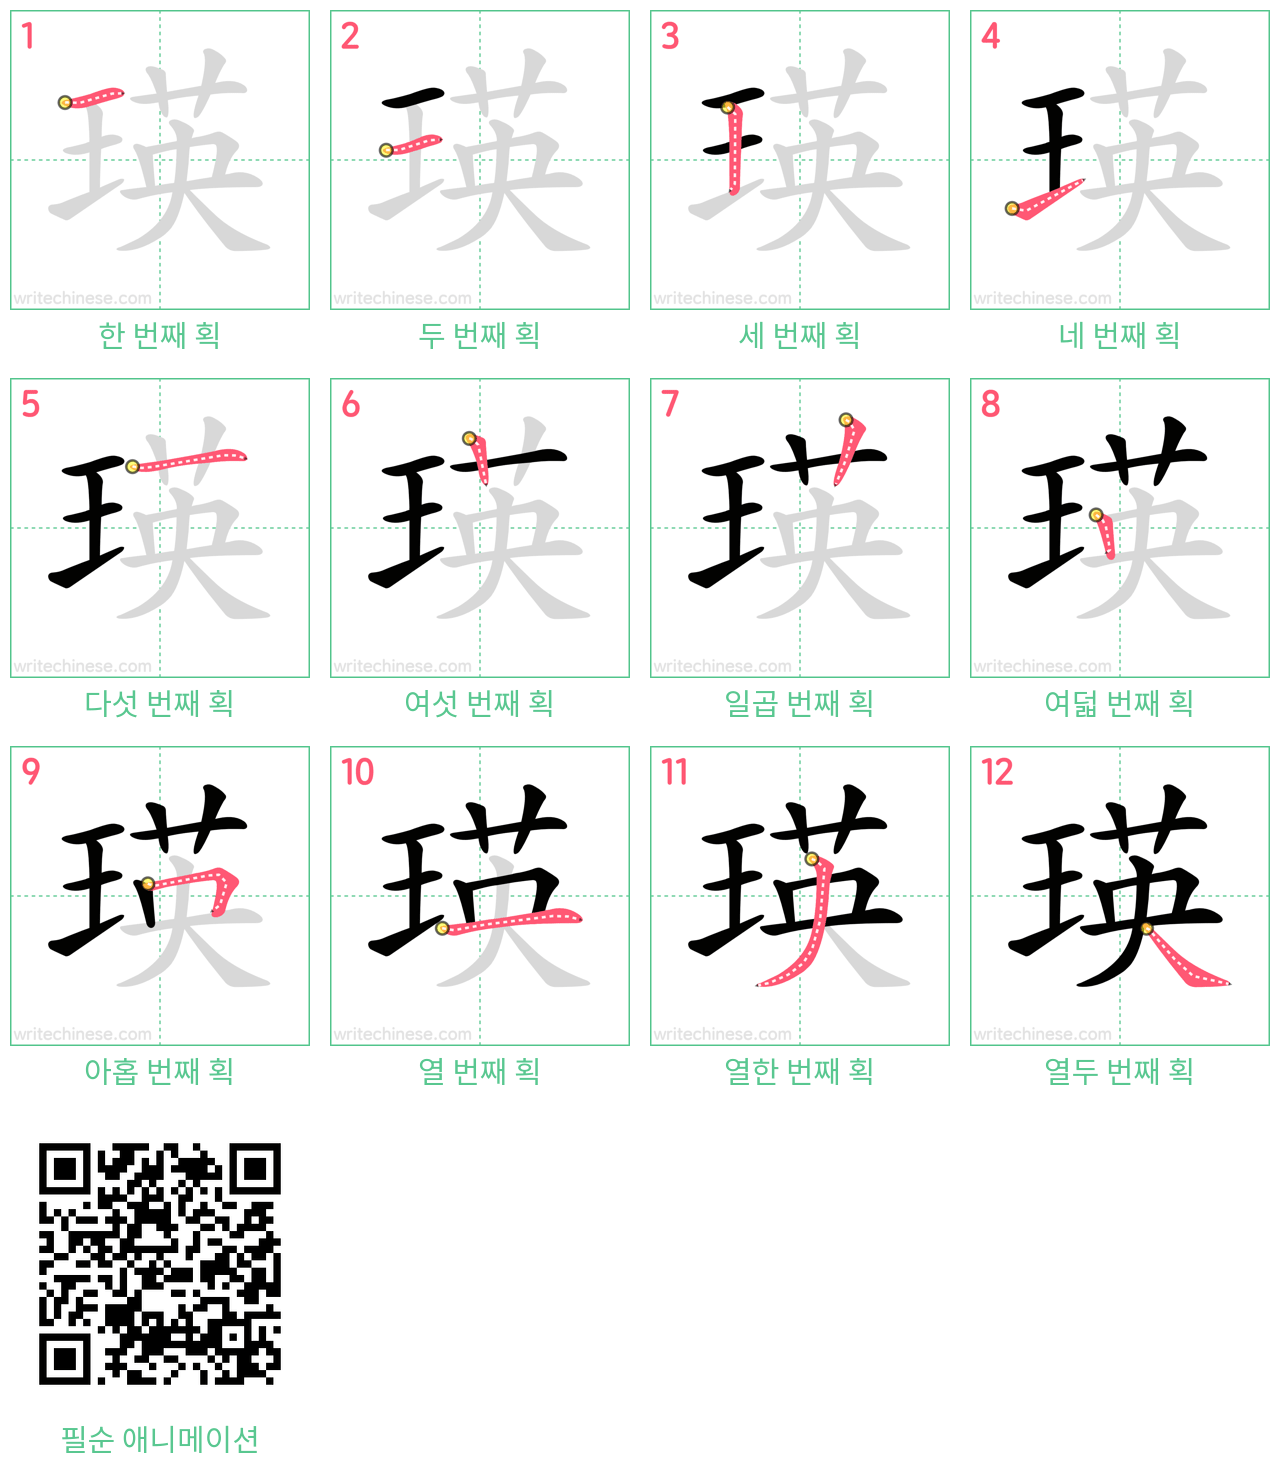 瑛 step-by-step stroke order diagrams